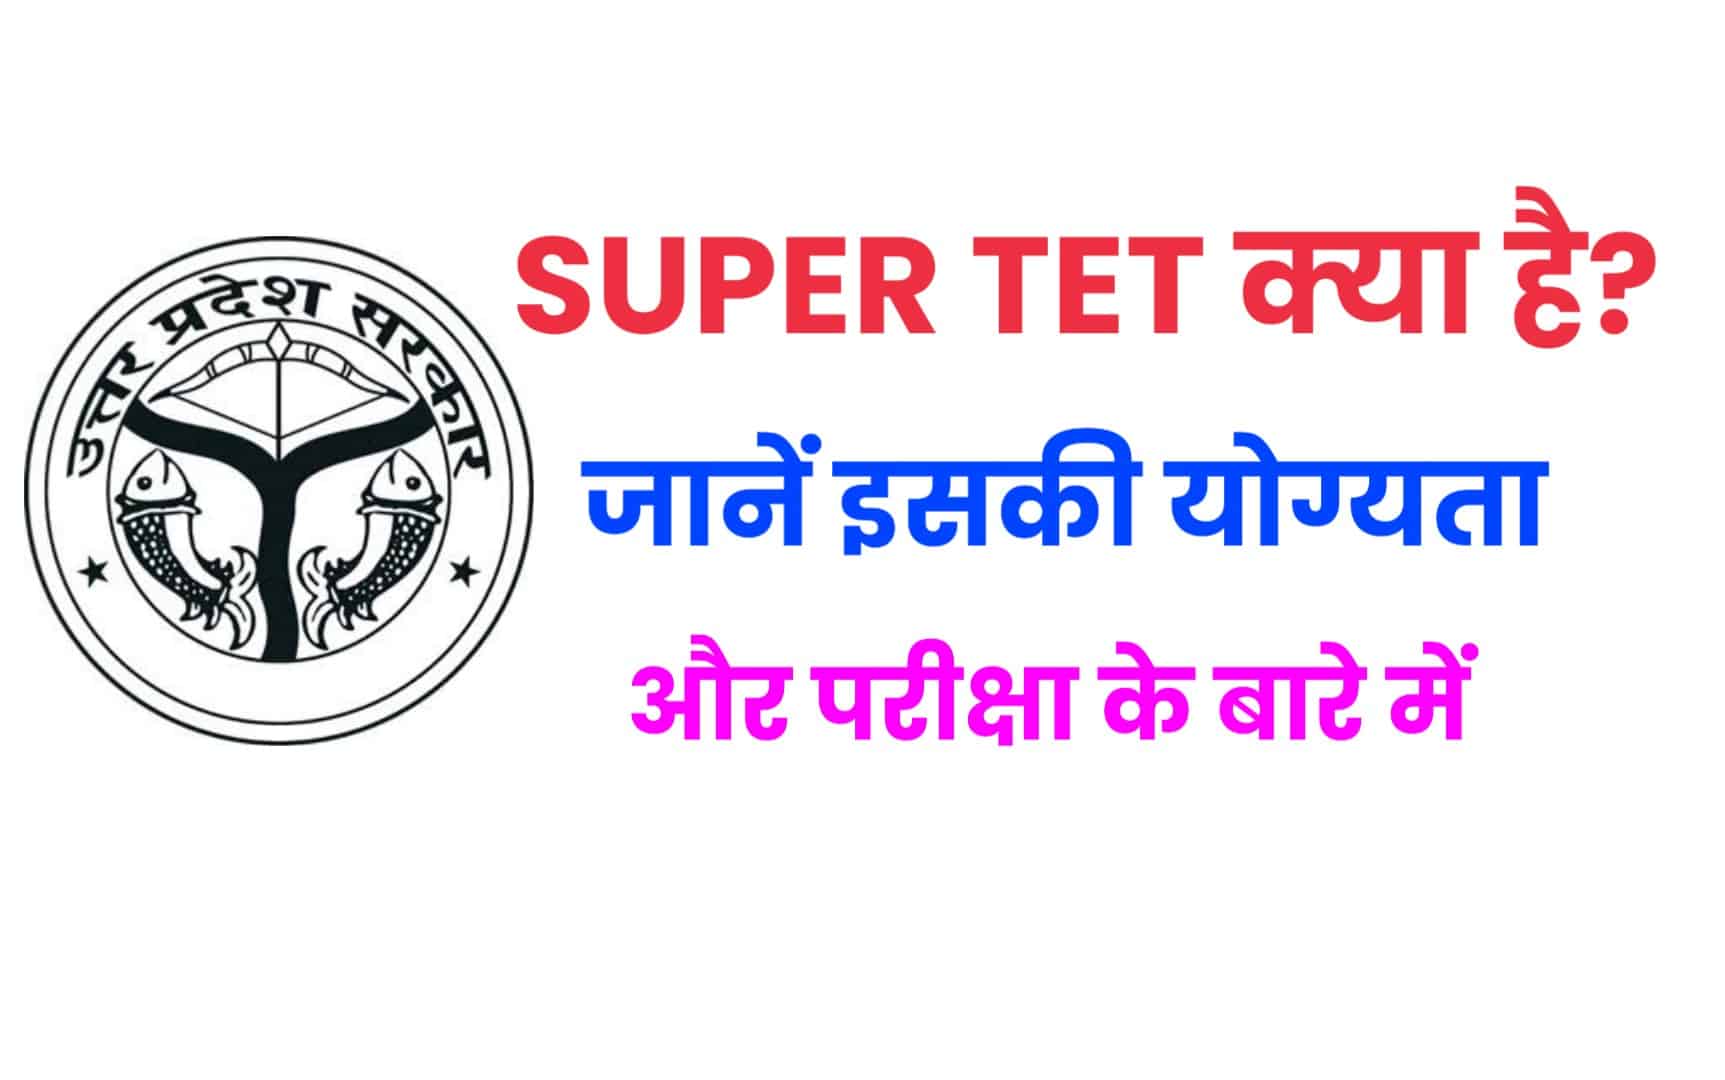 What Is Super TET - जानें क्या है सुपरटेट, योग्यता, परीक्षा की पूरी जानकारी